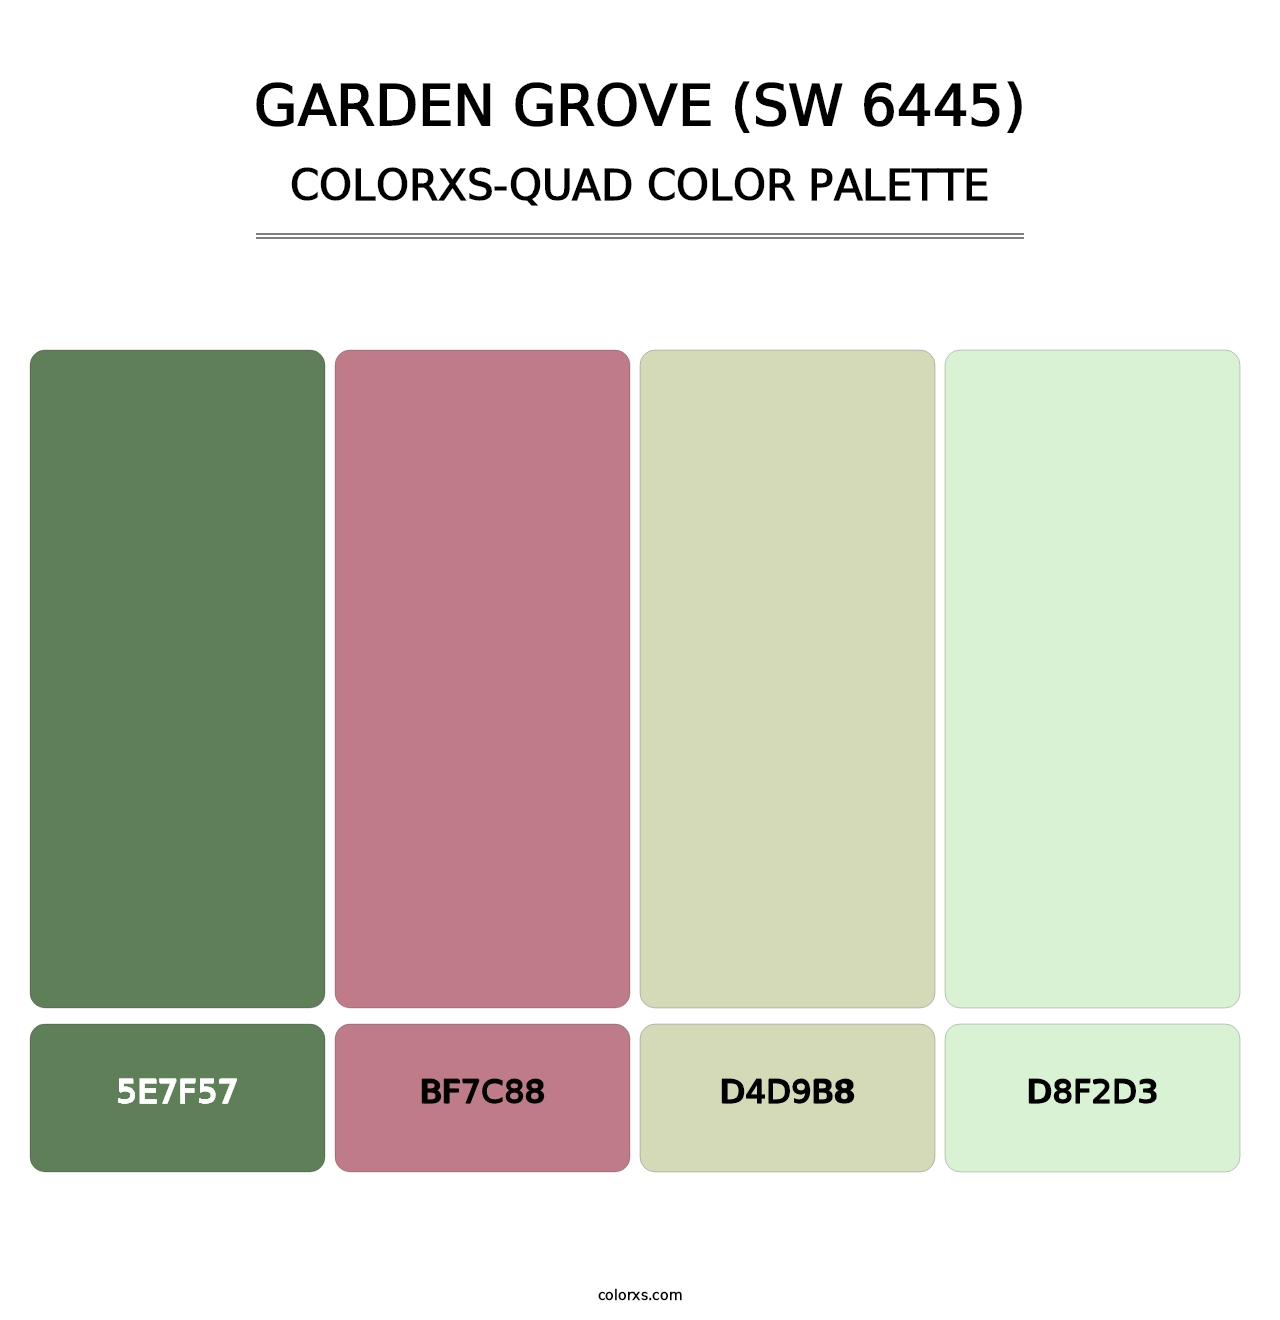 Garden Grove (SW 6445) - Colorxs Quad Palette